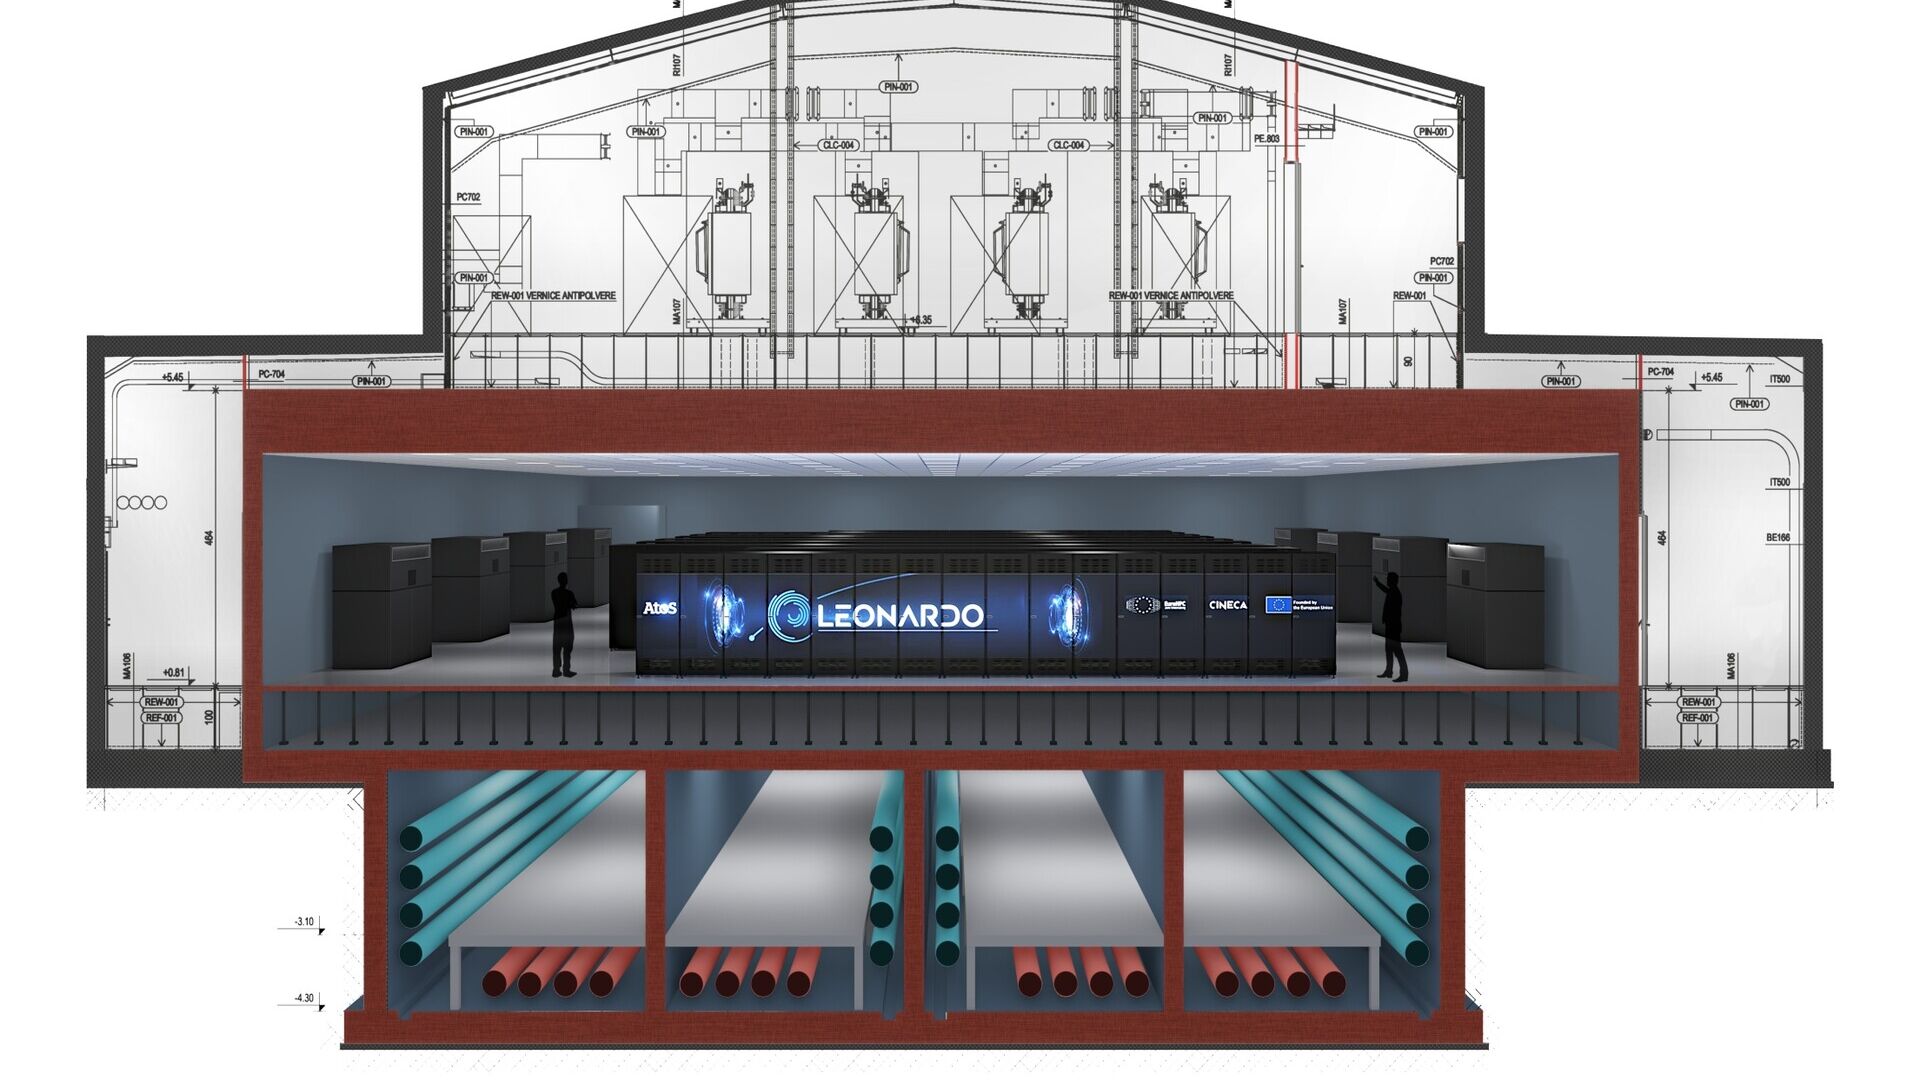 The location of the Leonardo supercomputer in the Big Data Technopole building in Bologna